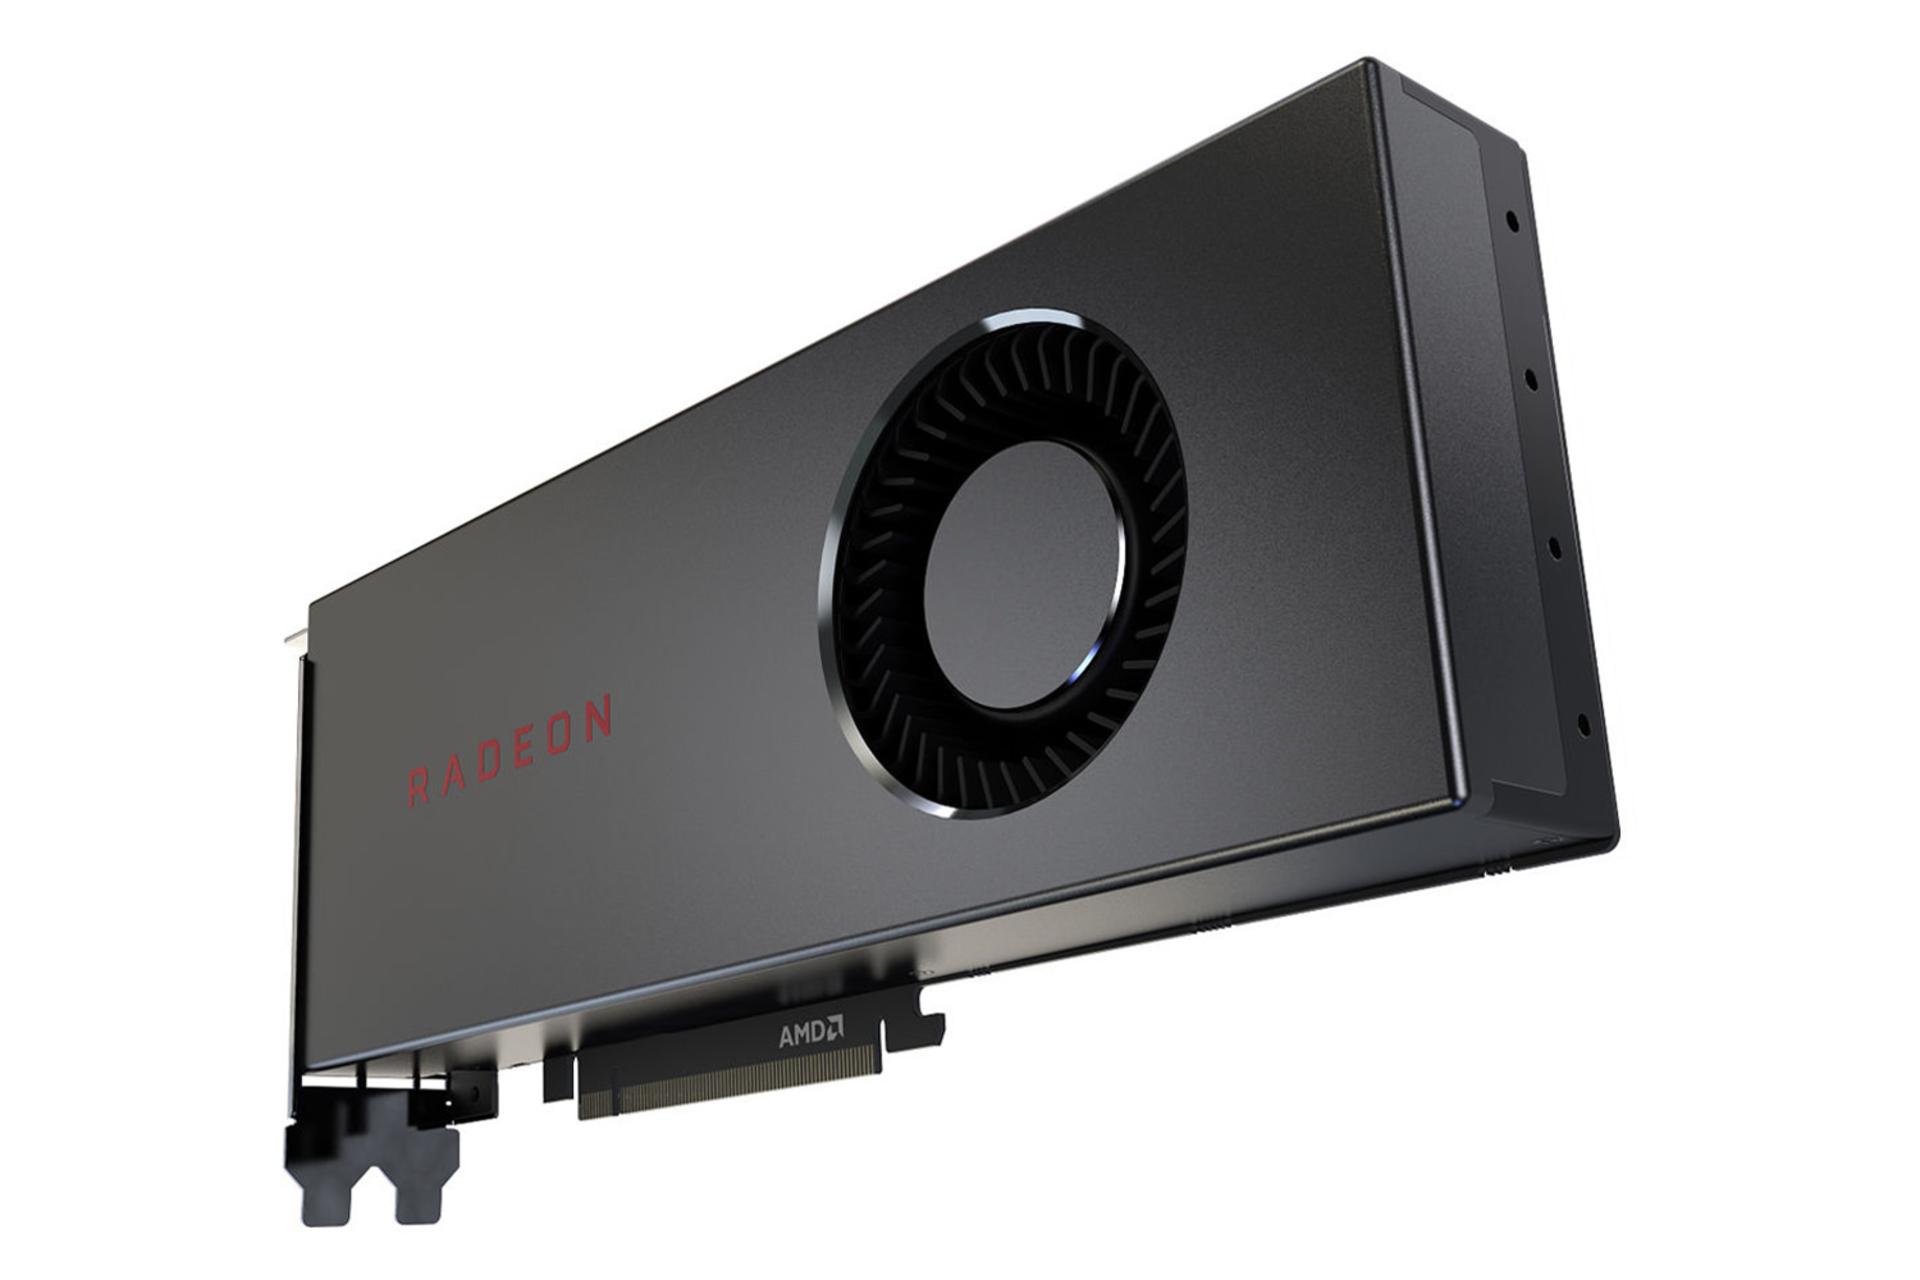 کارت گرافیک AMD Radeon RX 5700 نمای پشت -  فن خروجی هوا / AMD رادئون RX 5700